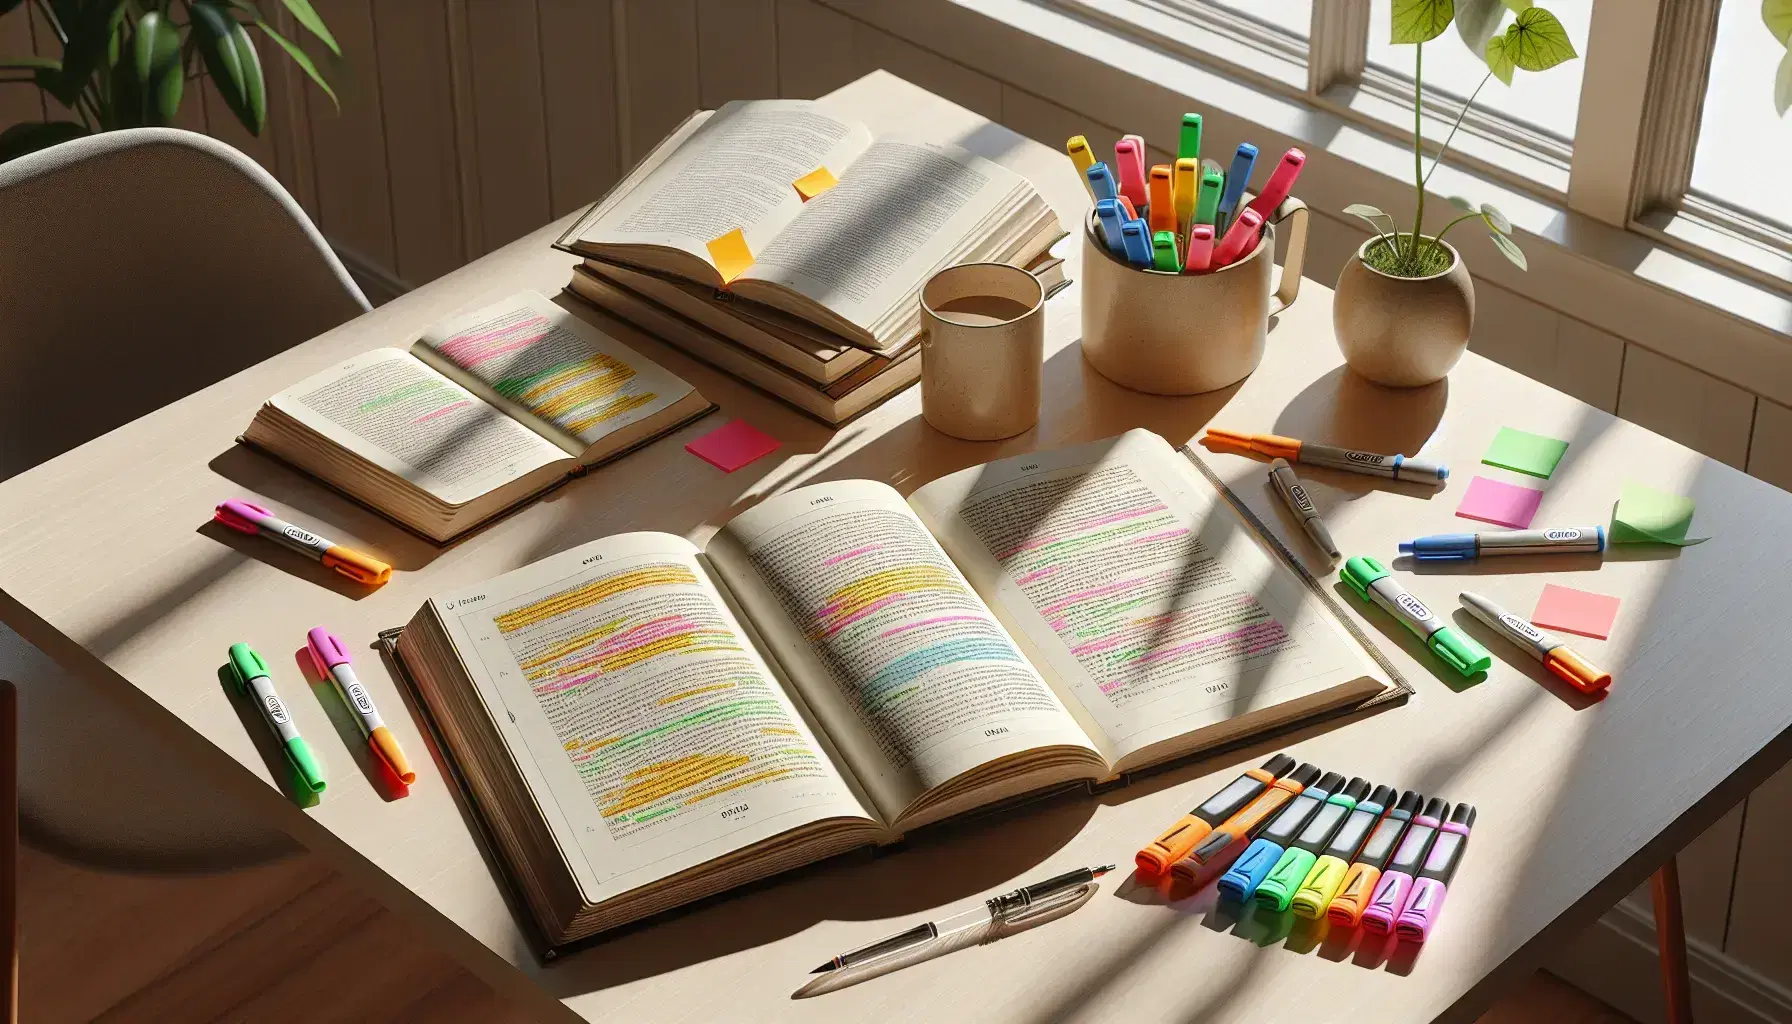 Escritorio de estudio de madera iluminado por luz natural con libros abiertos, post-its coloridos, resaltadores, cuaderno con notas y una taza junto a una planta en maceta.